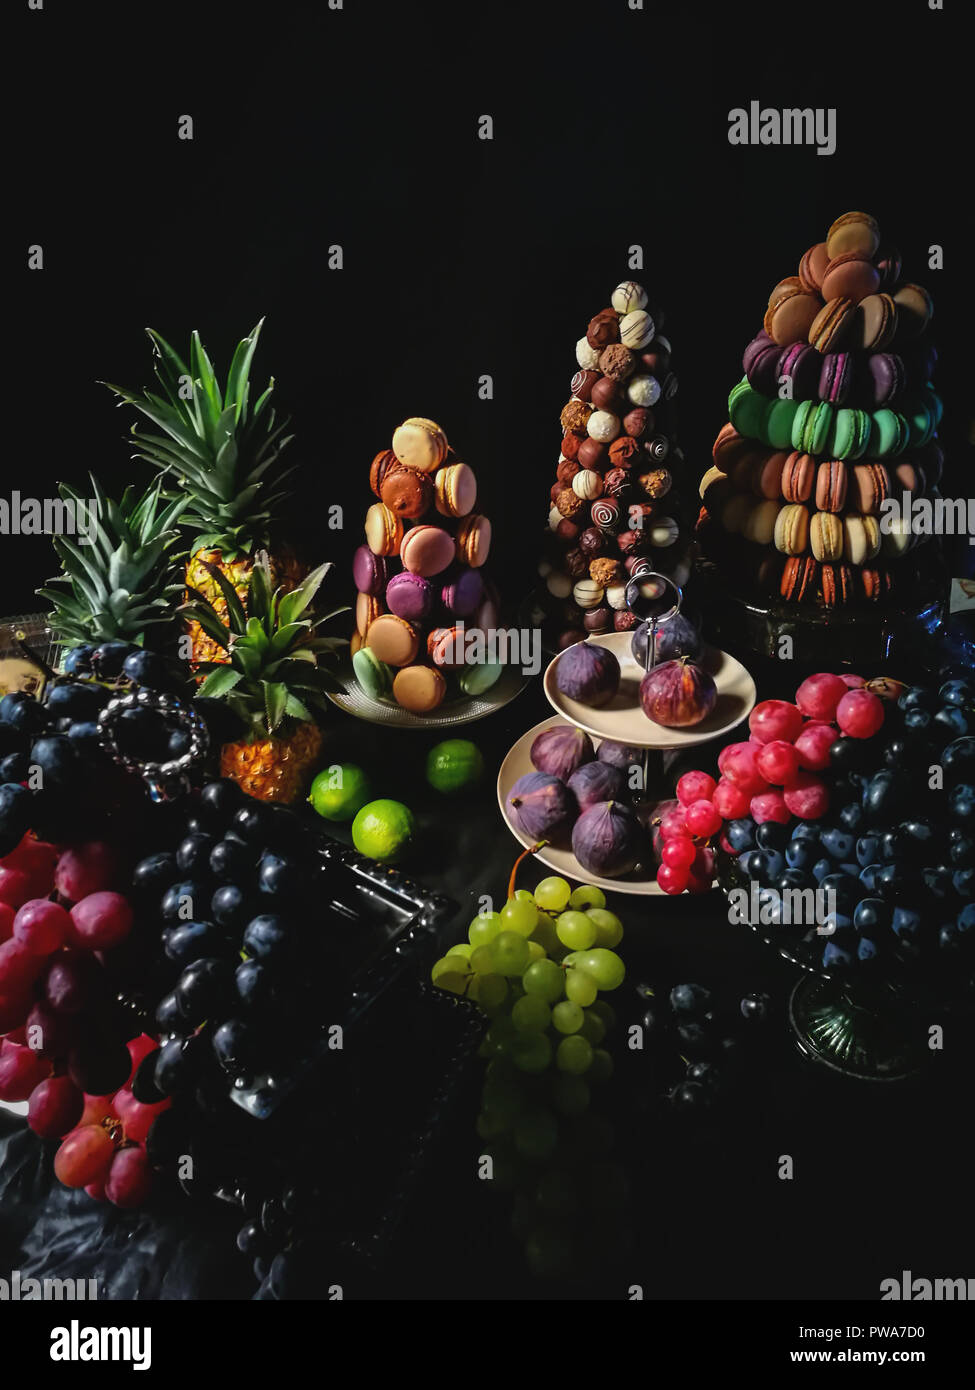 Amaretti colorati,cioccolato artigianale di caramelle,l'ananas, fichi, uva da tavola da dessert Foto Stock